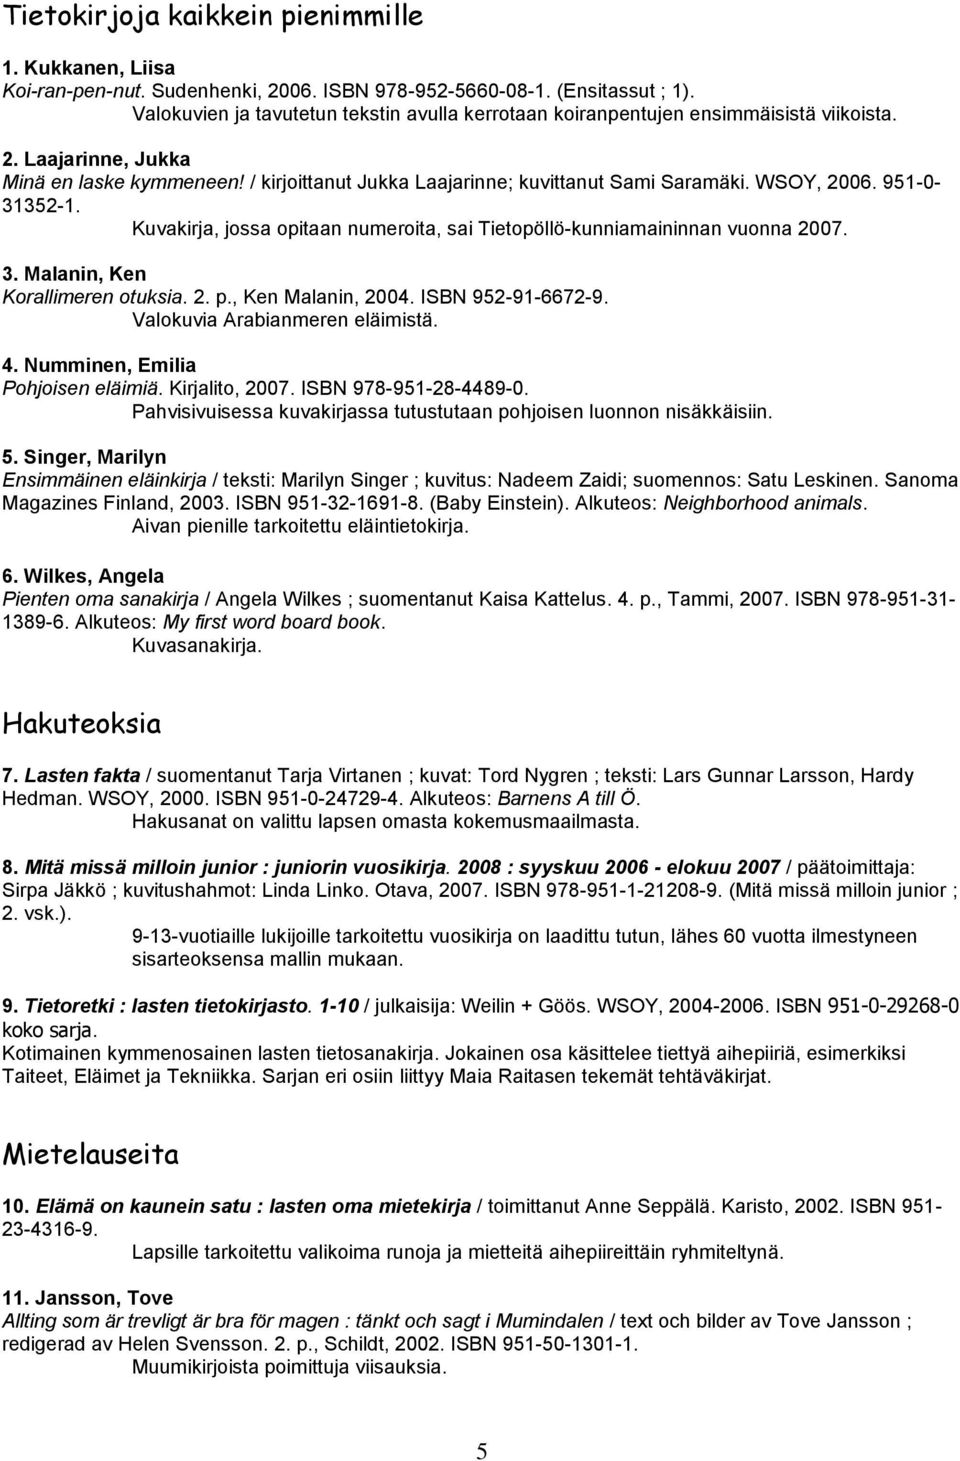 WSOY, 2006. 951-0- 31352-1. Kuvakirja, jossa opitaan numeroita, sai Tietopöllö-kunniamaininnan vuonna 2007. 3. Malanin, Ken Korallimeren otuksia. 2. p., Ken Malanin, 2004. ISBN 952-91-6672-9.